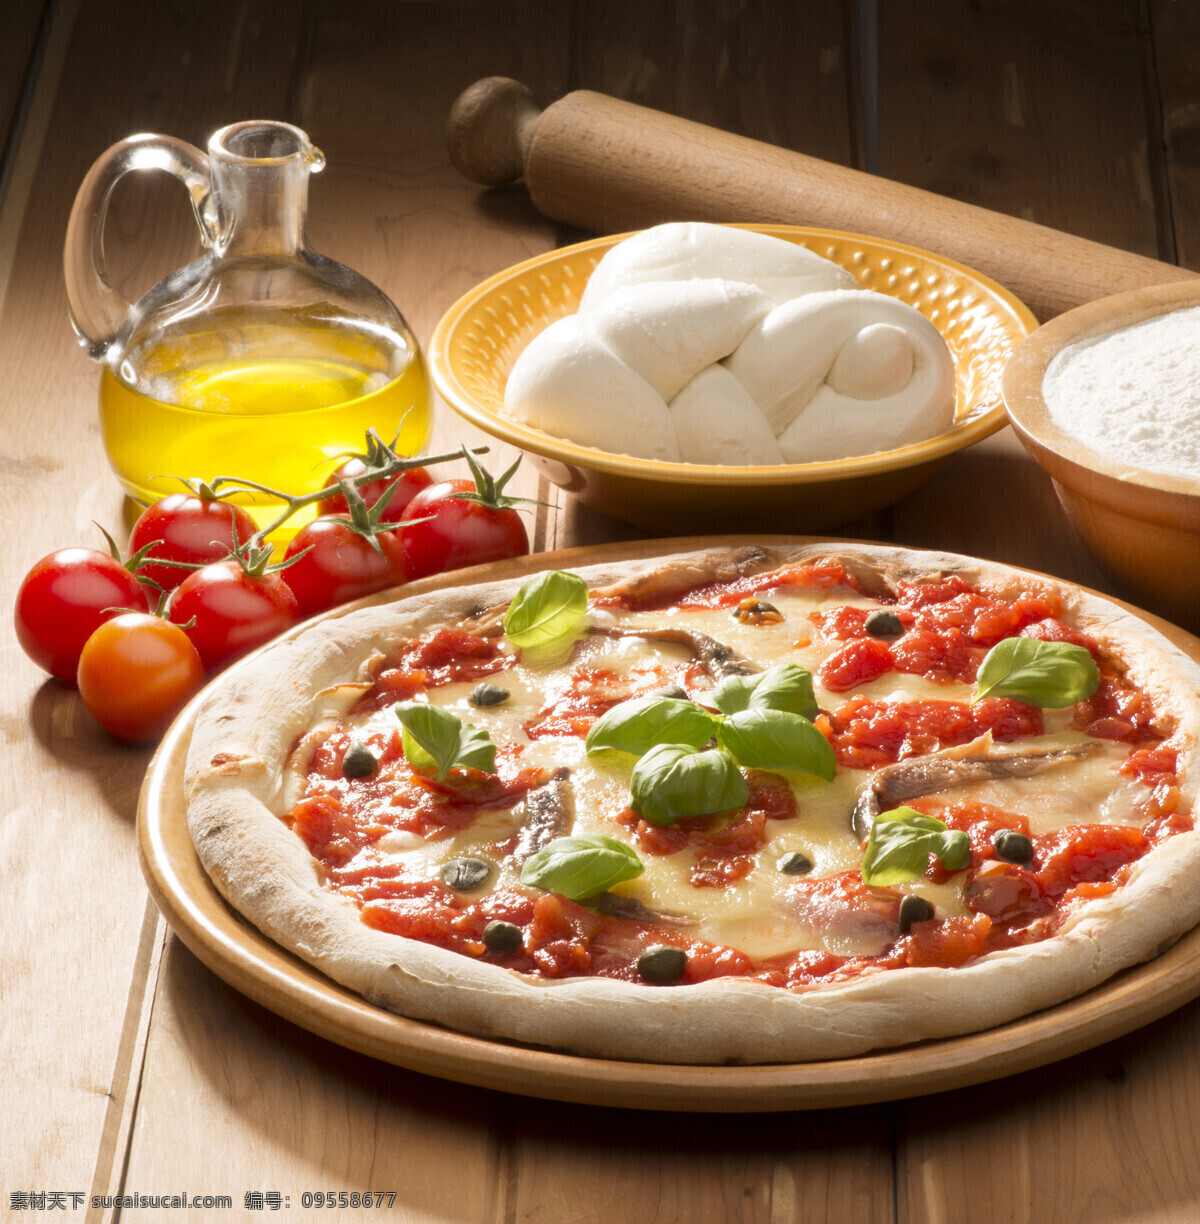 食用油 蔬菜 披萨 色拉油 披萨美食 意大利披萨 国外美食 美味 外国美食 餐饮美食 黑色